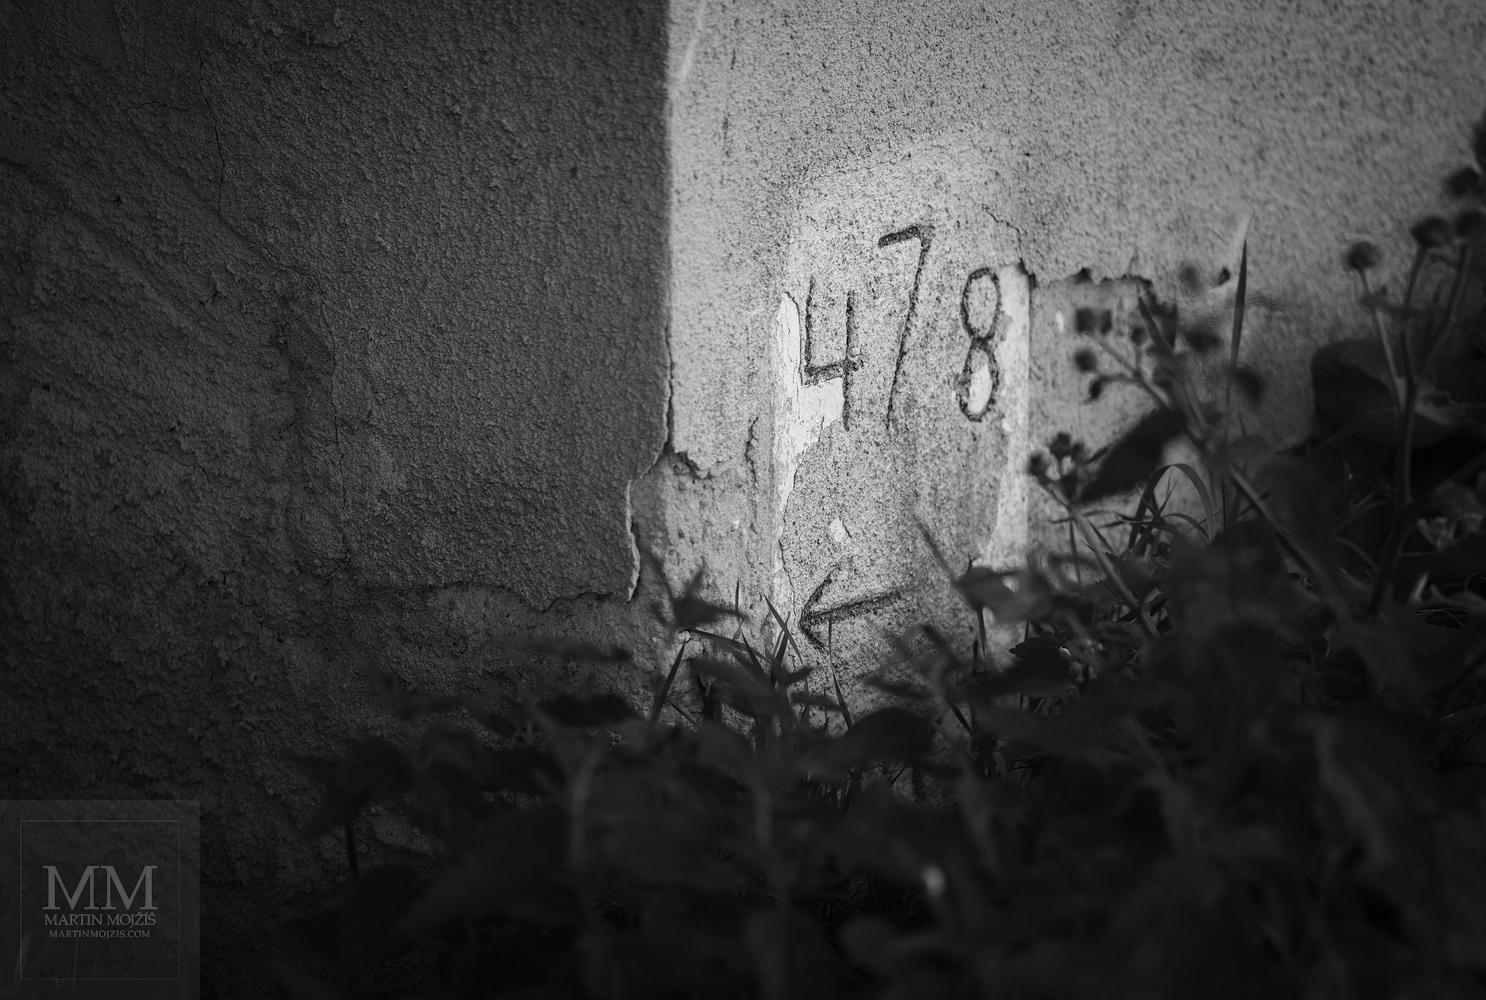 Železniční hektometrovník ve stěně domu. Umělecká černobílá fotografie s názvem VE STĚNĚ II. Fotograf Martin Mojžíš.